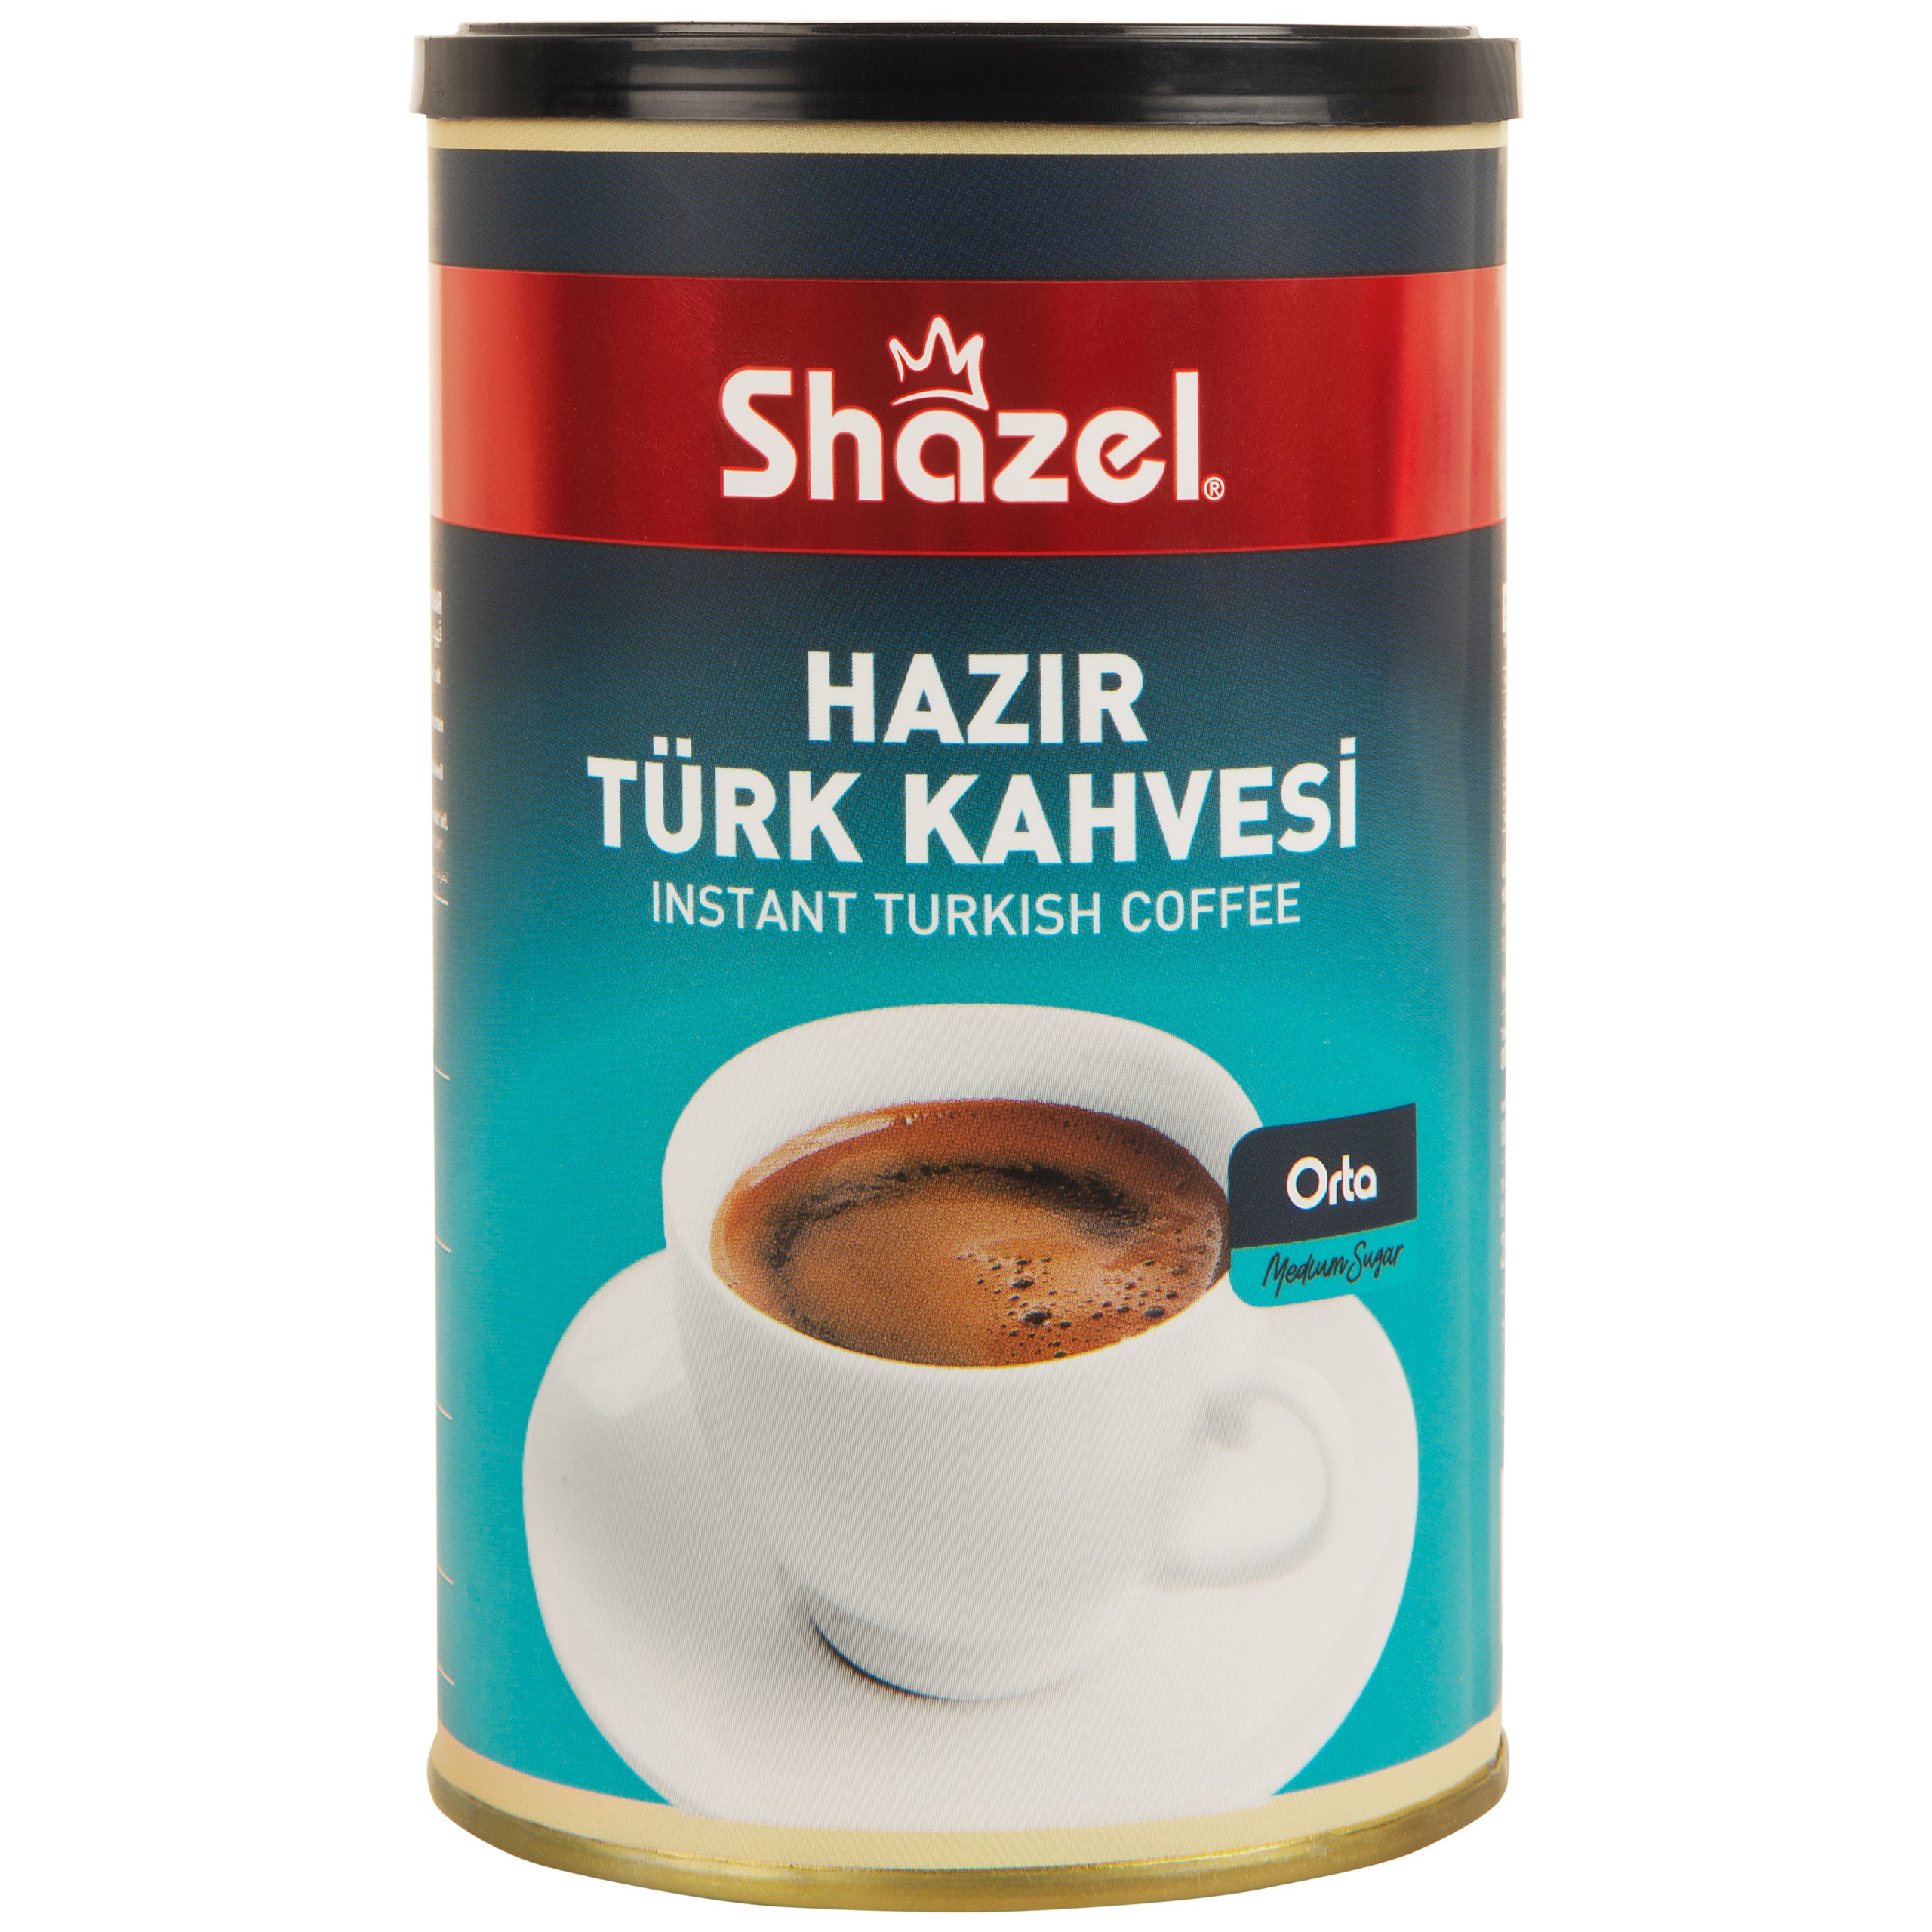 Shazel Instant Turkish Coffee Medium Sugar - 250g